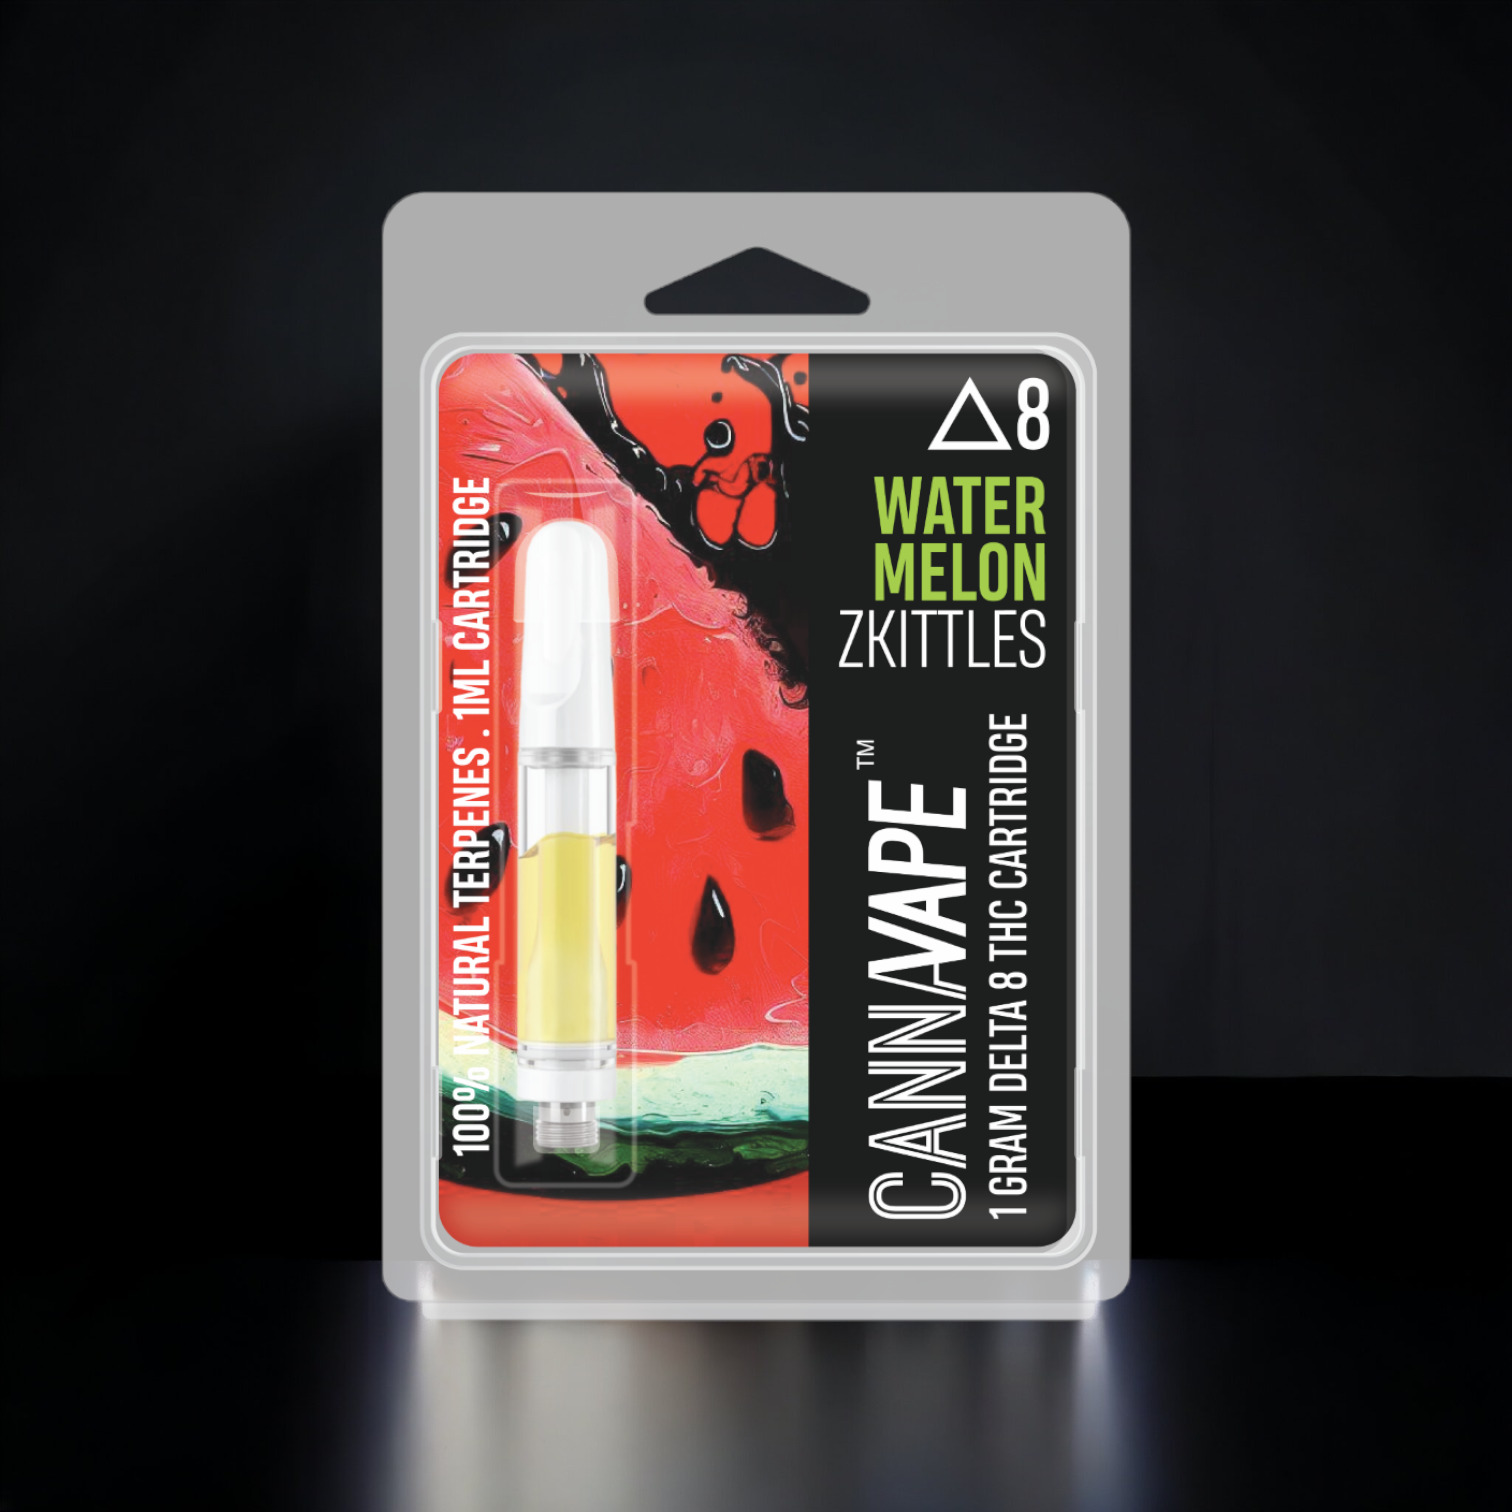 Watermelon Zkittles Delta 8 Vape Cartridge